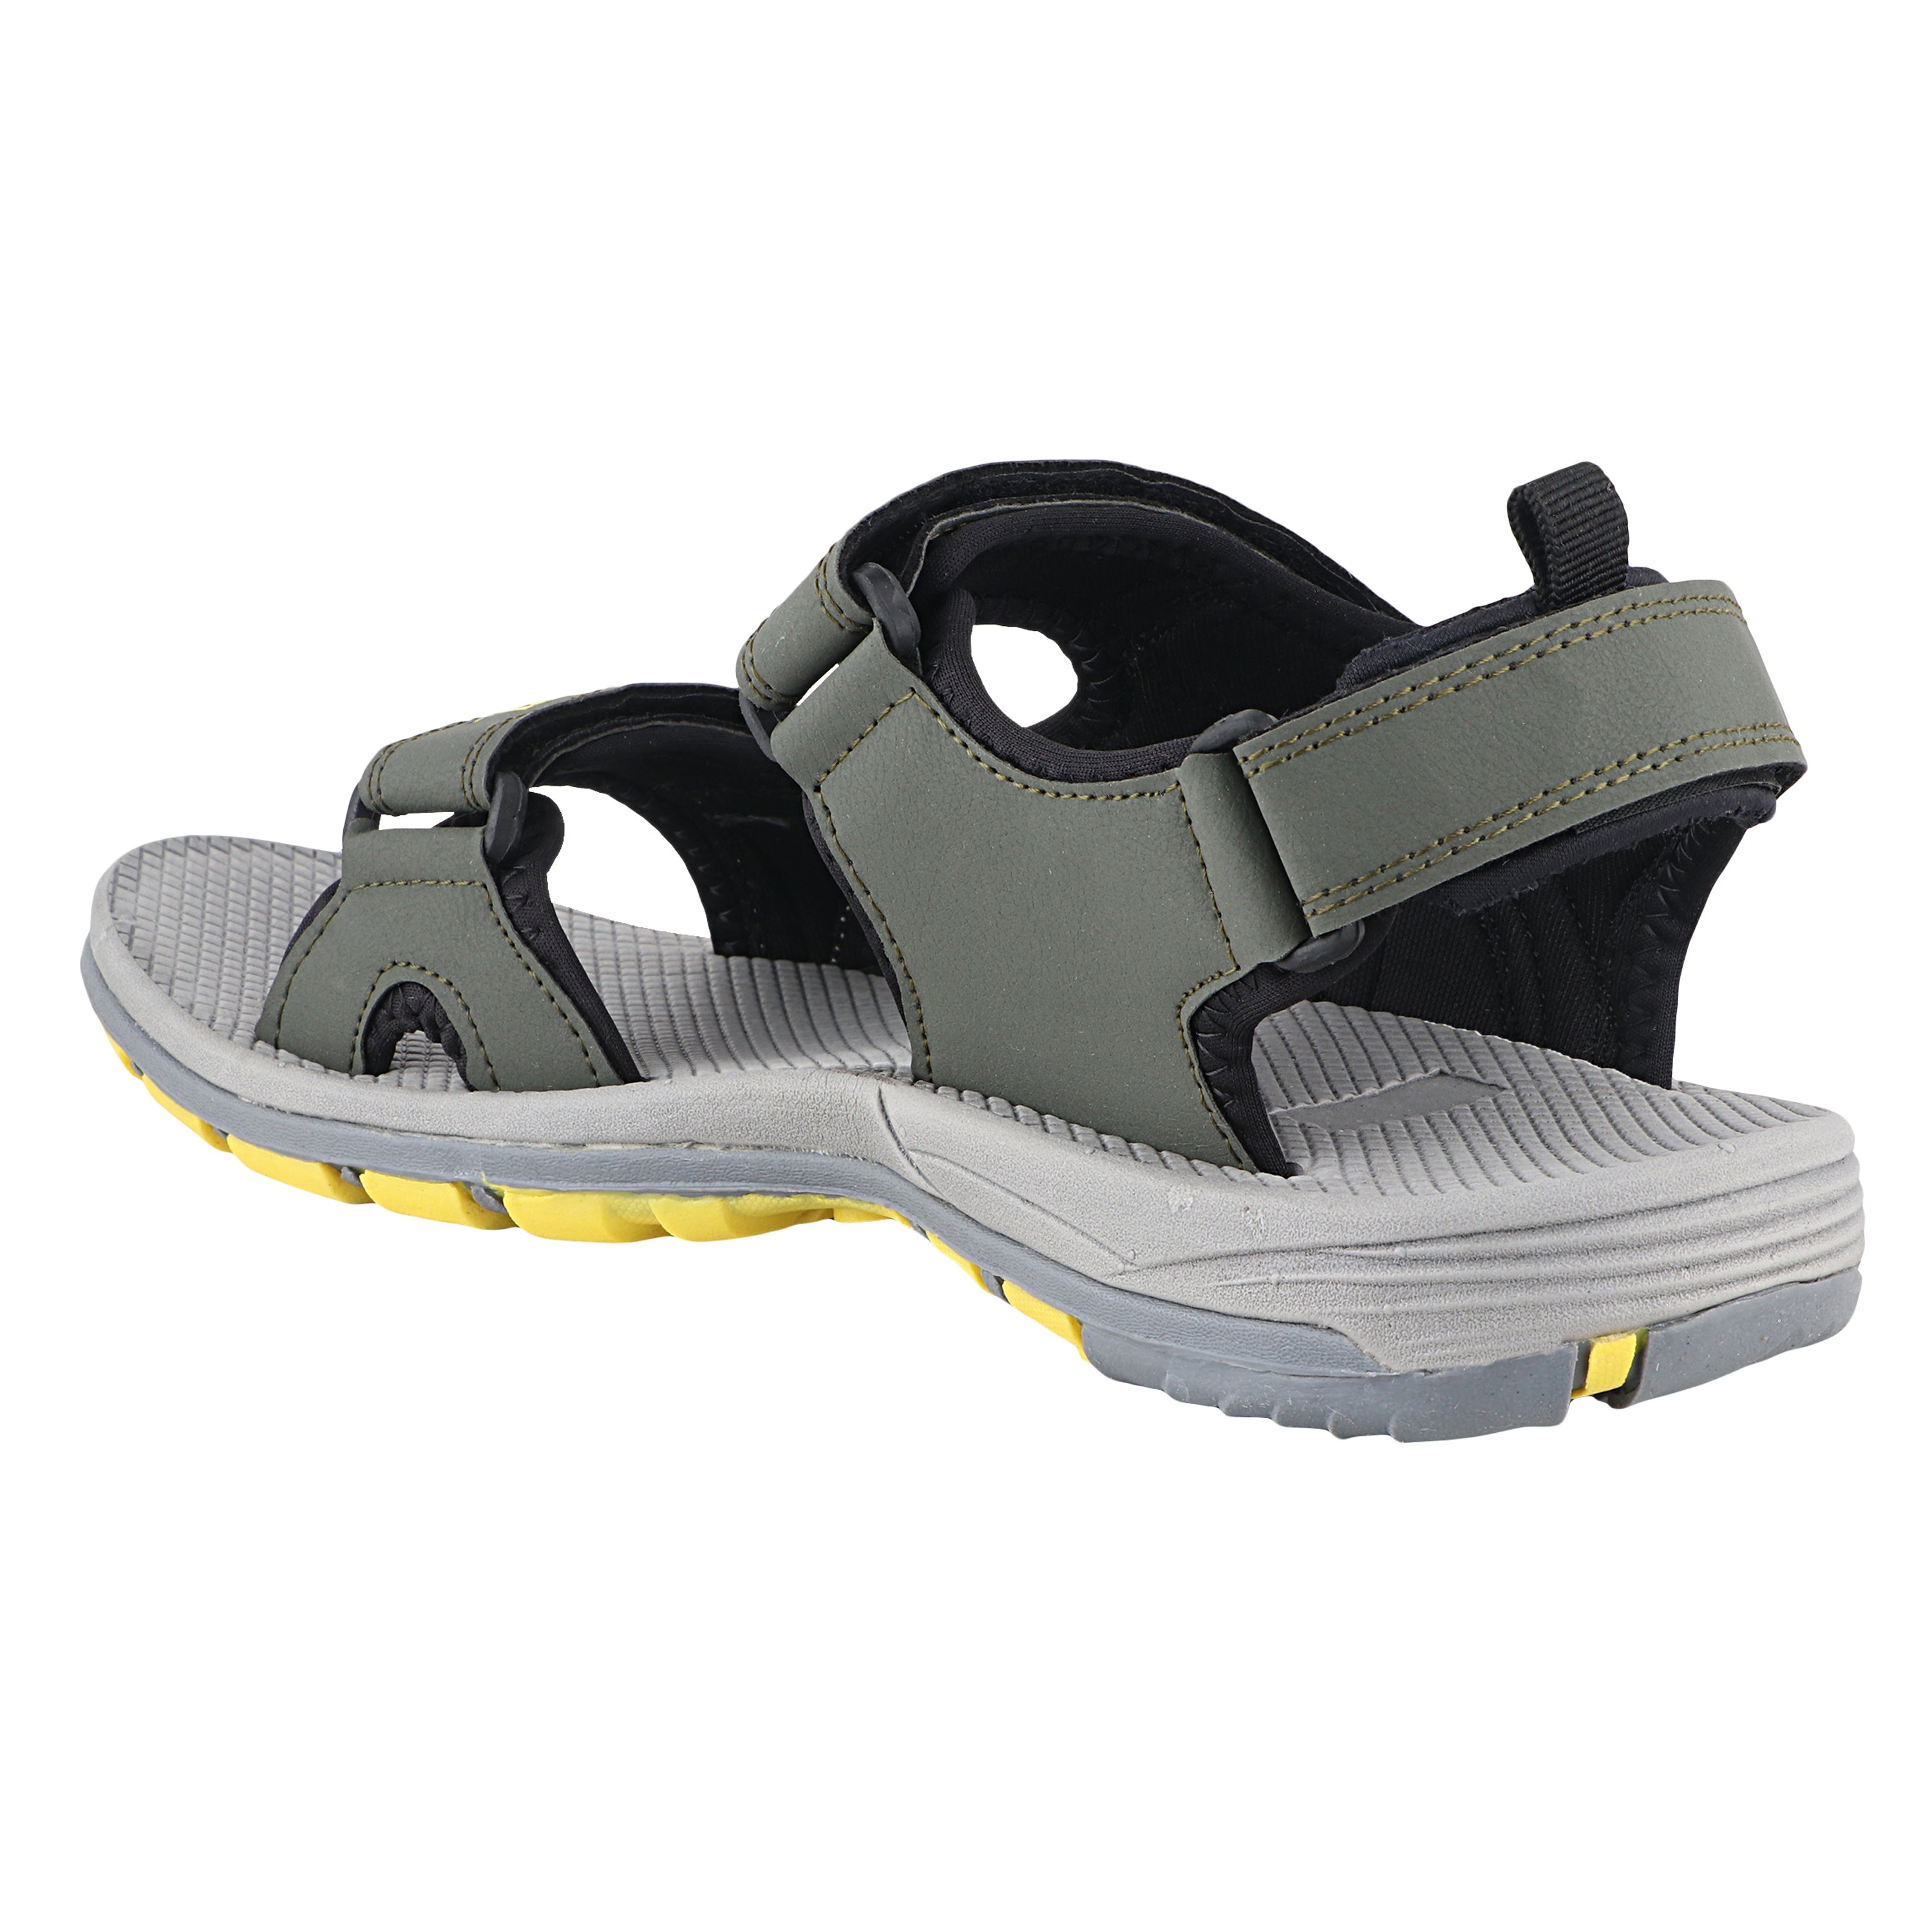 Fuel Splendor Sandals For Men's (Oilve-Yellow)